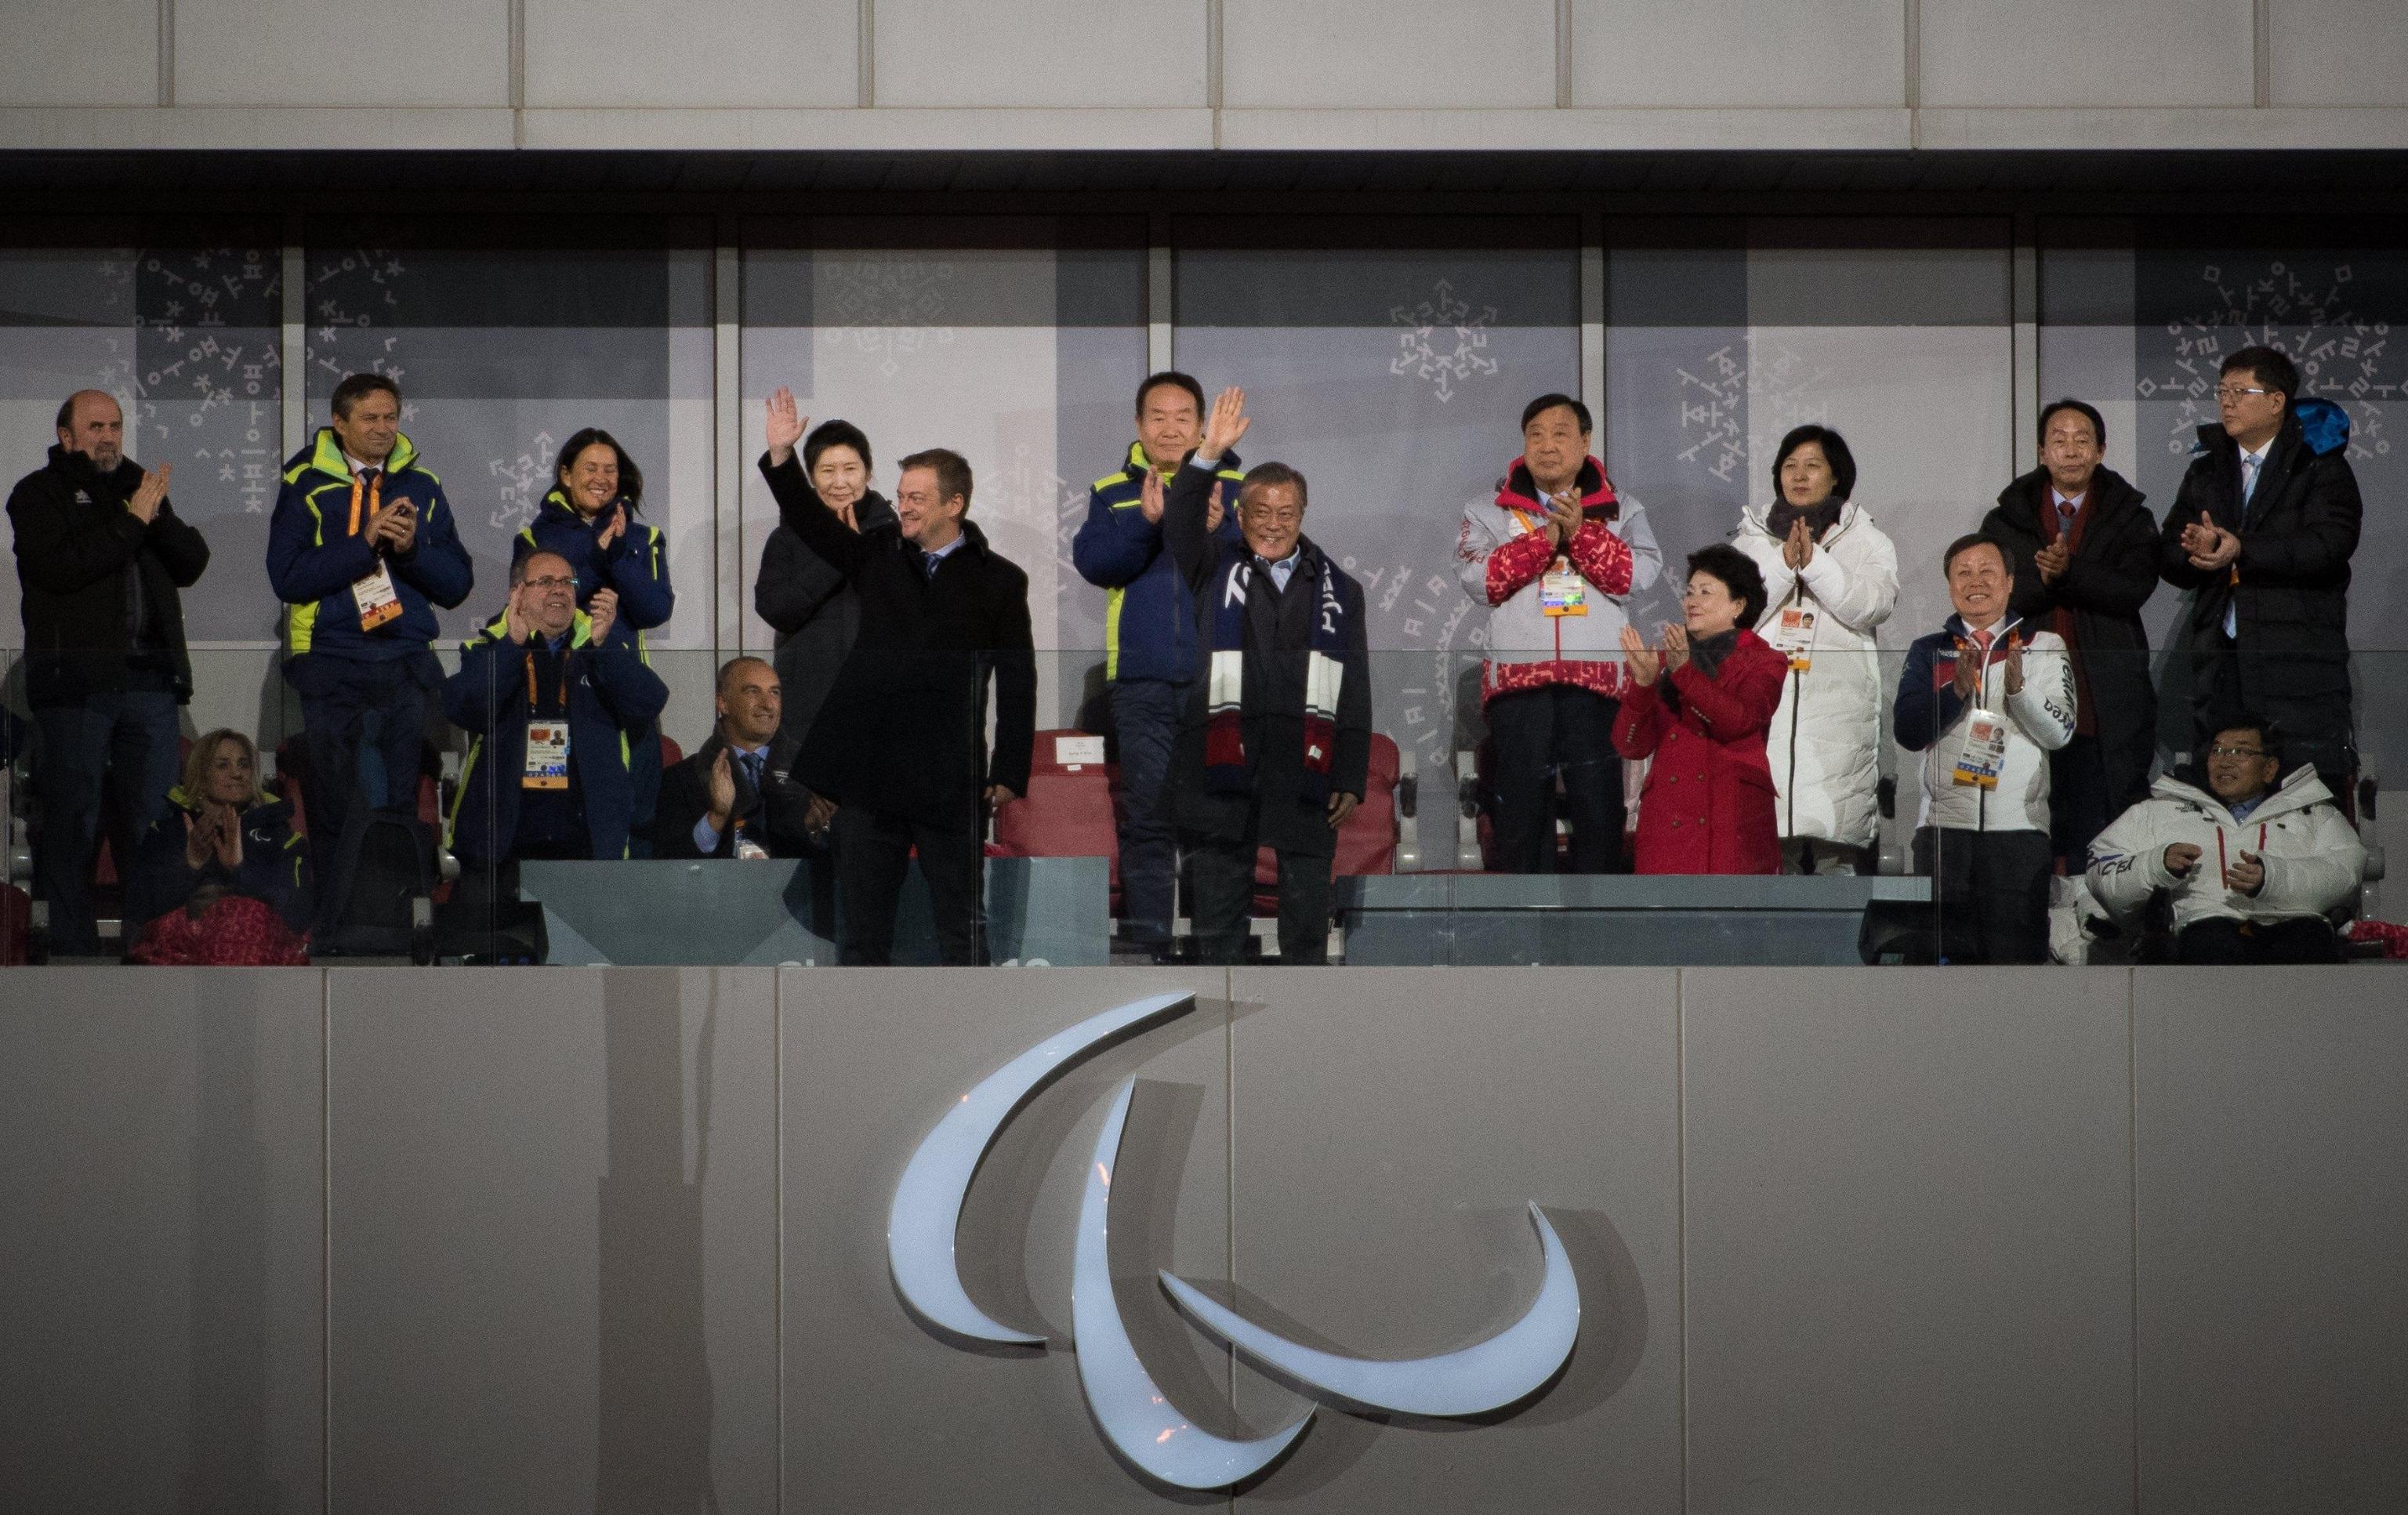 Il presidente sudcoreano Moon Jae-in e il presidente del CPI Andrew Parsons salutano la folla